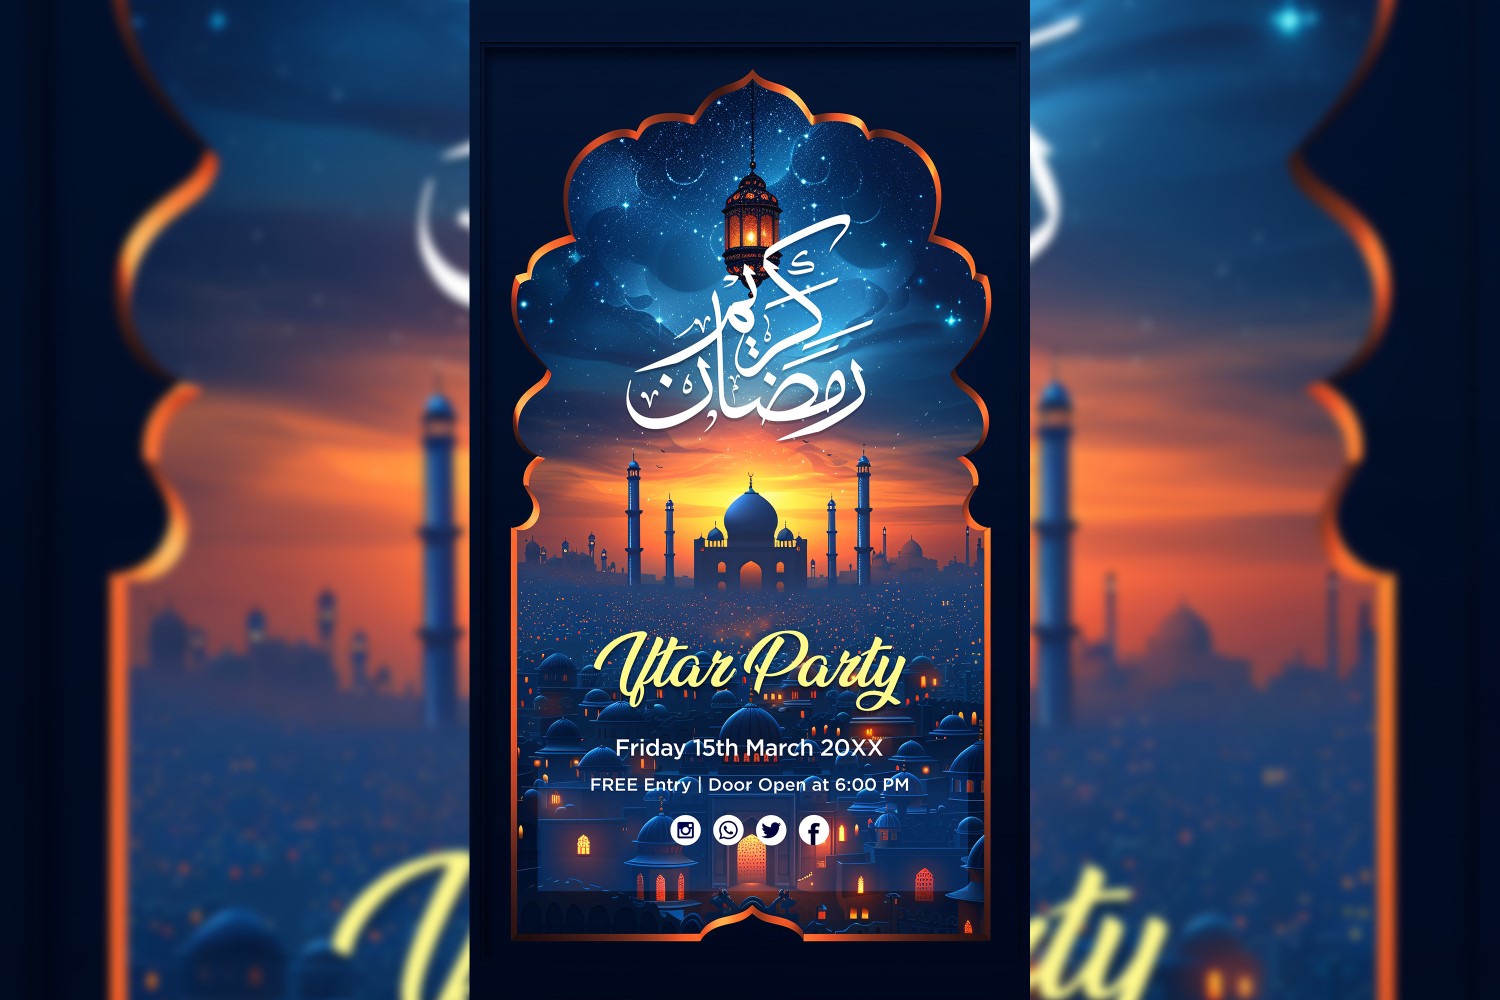 Ramadan Iftar Party Poster Design Template 13